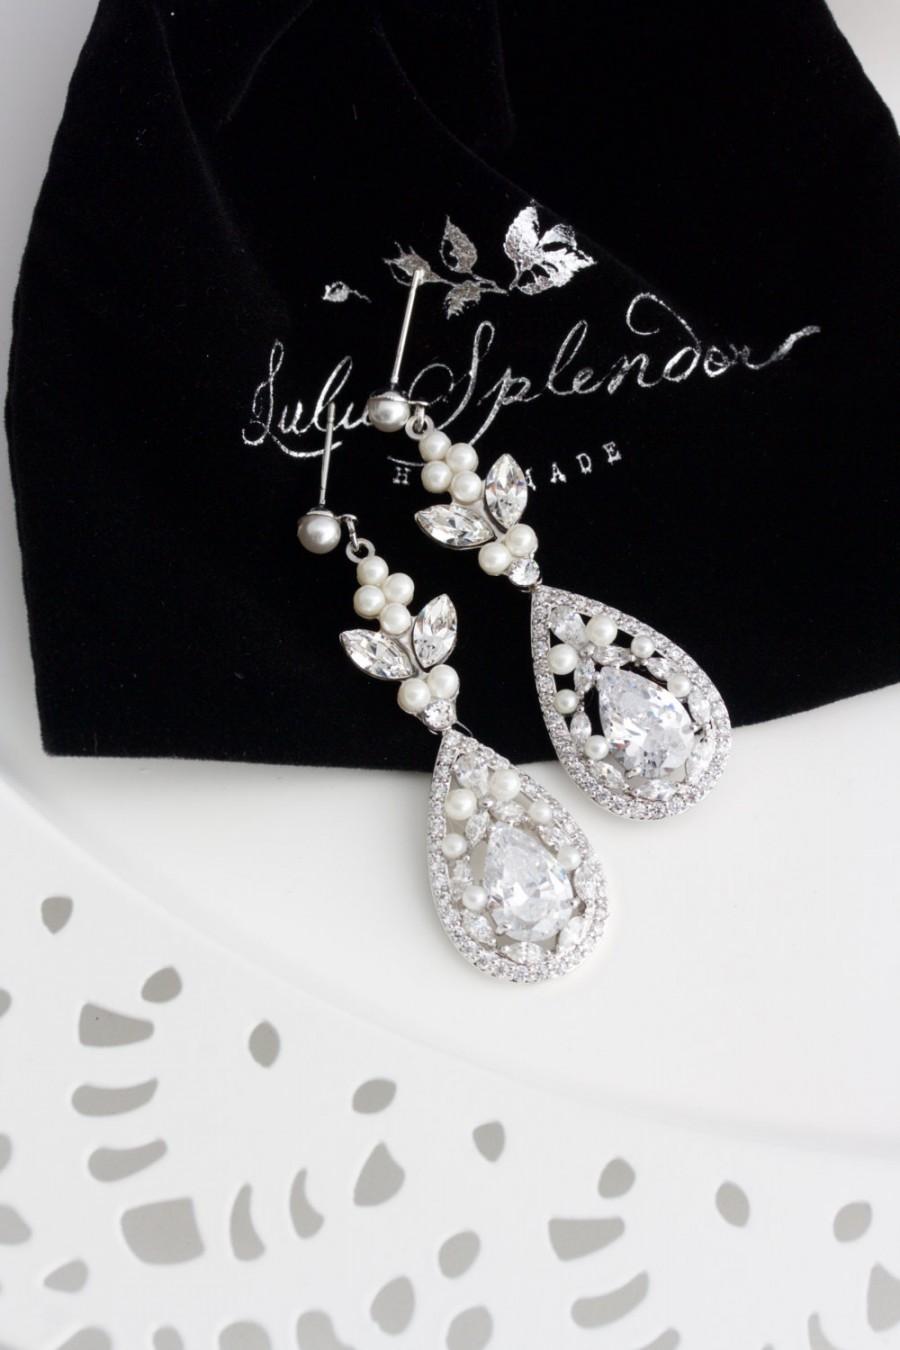 Mariage - Crystal Bridal Earrings Teardrop Wedding Earrings Cubic Zirconia Long Earrings Wedding Jewelry Swarovski Crystal Wedding Jewelry VIVIENNE